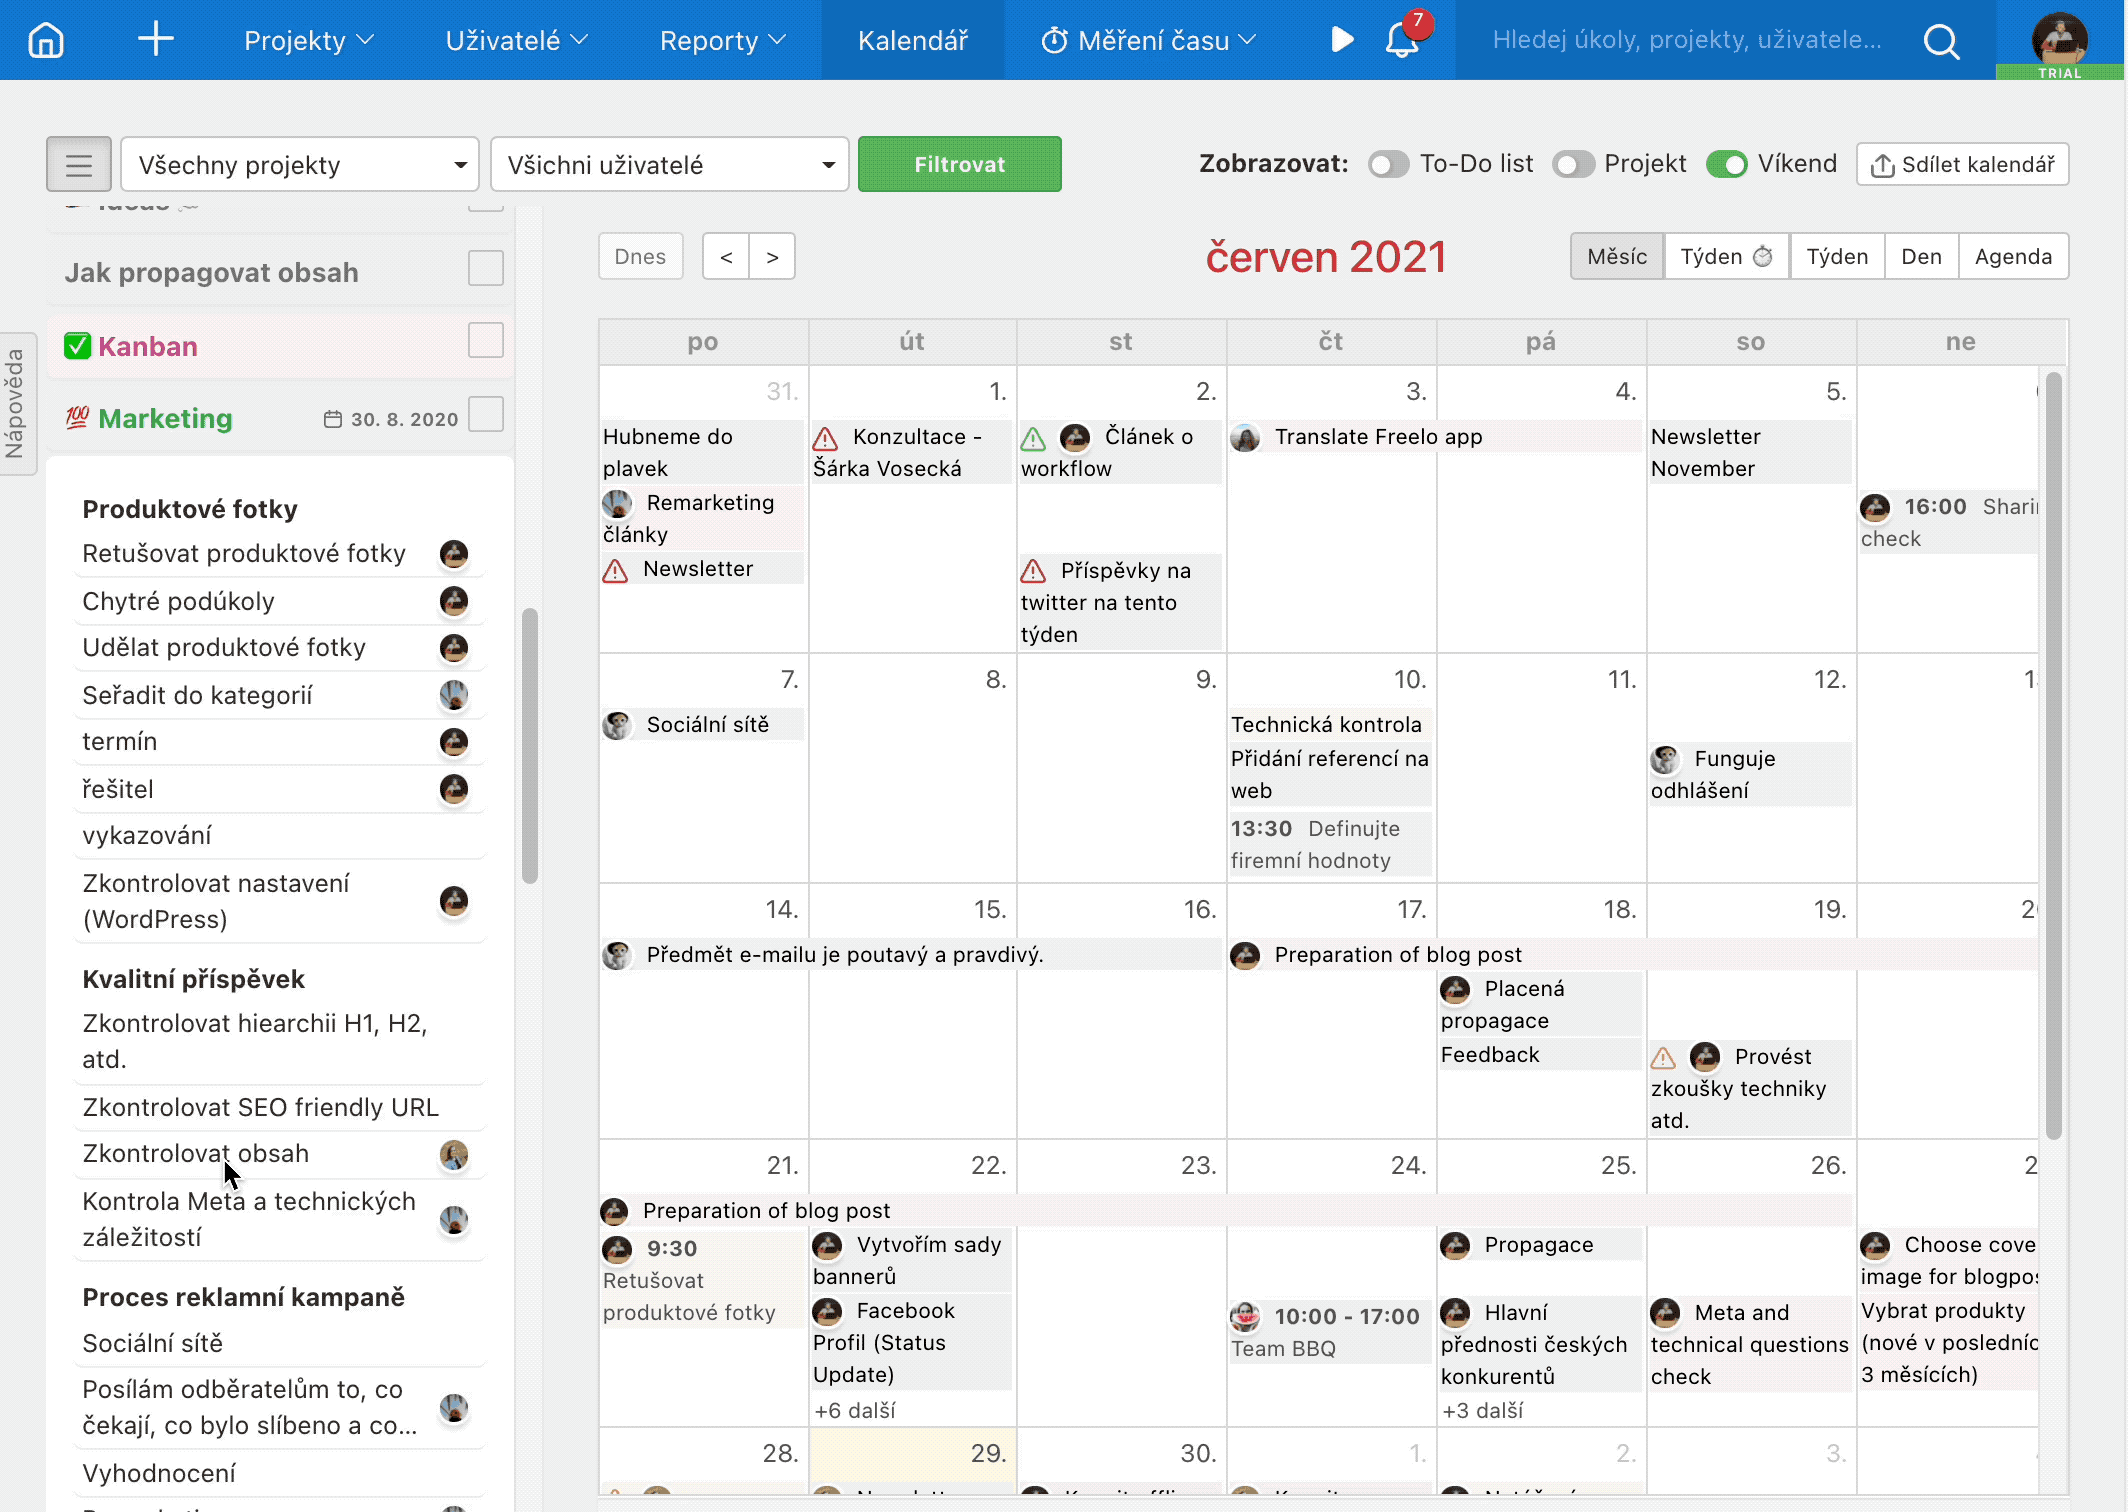 Plánování termínů úkolů v kalendáři.